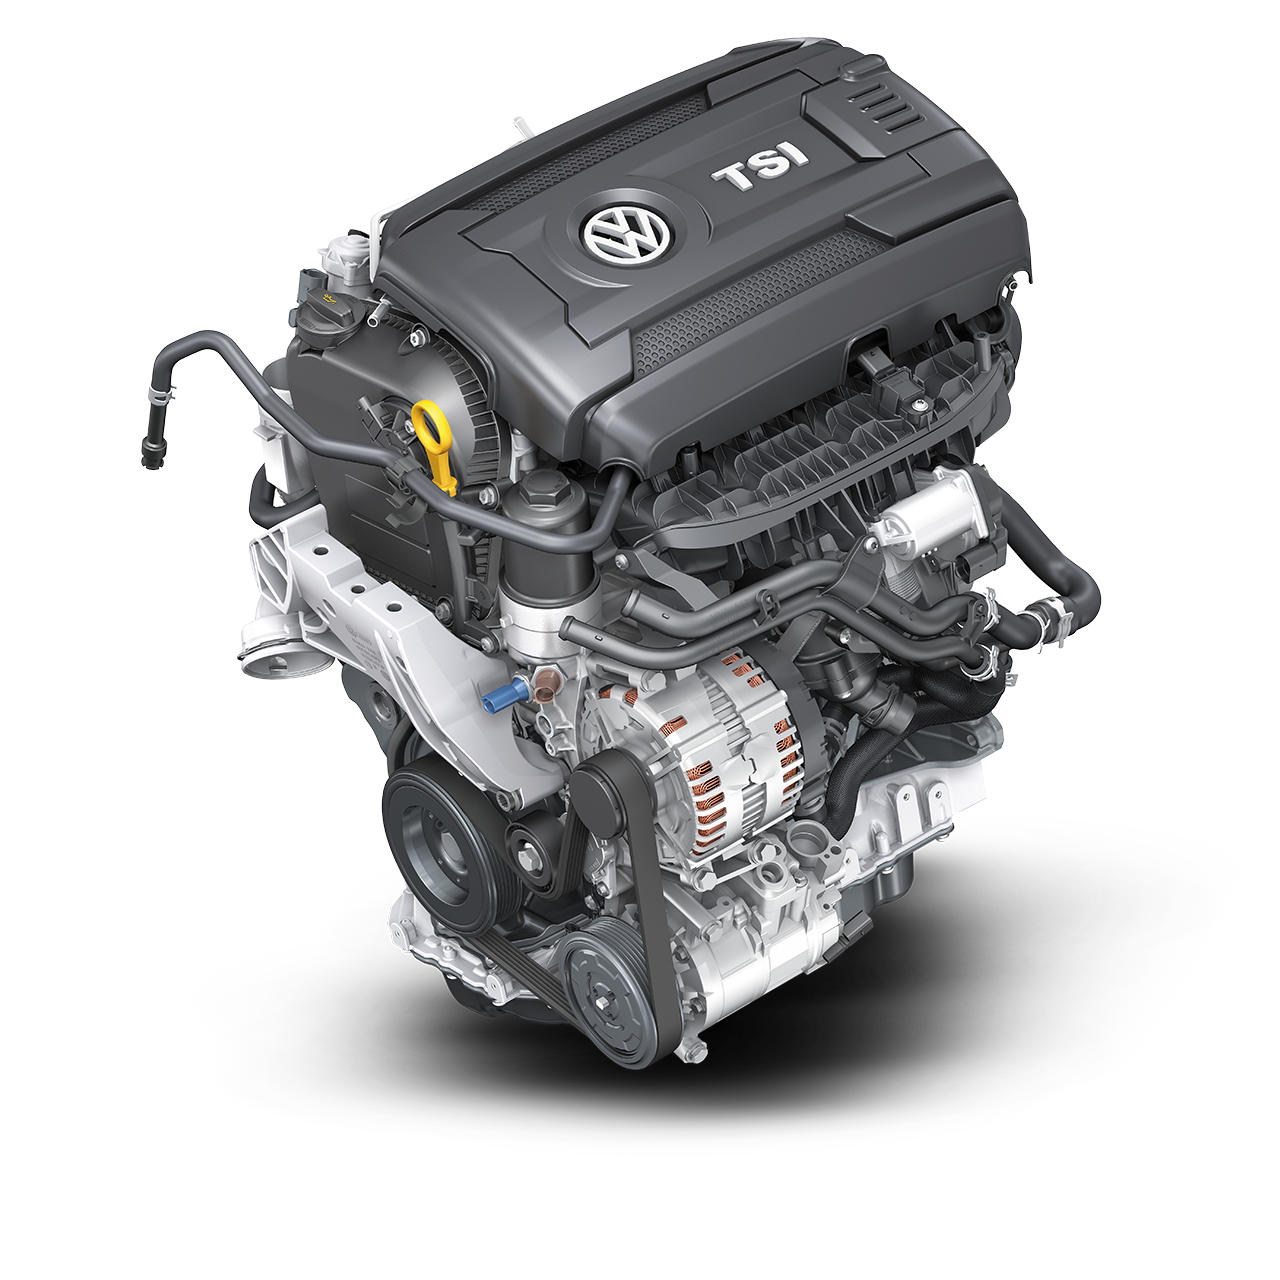 Tsi двигатель ремонт. Двигатель Volkswagen TSI 2.0. 1.8 TSI. 1.8 TSI ea888. Двигатель 1.8 TSI 152 Л.С.